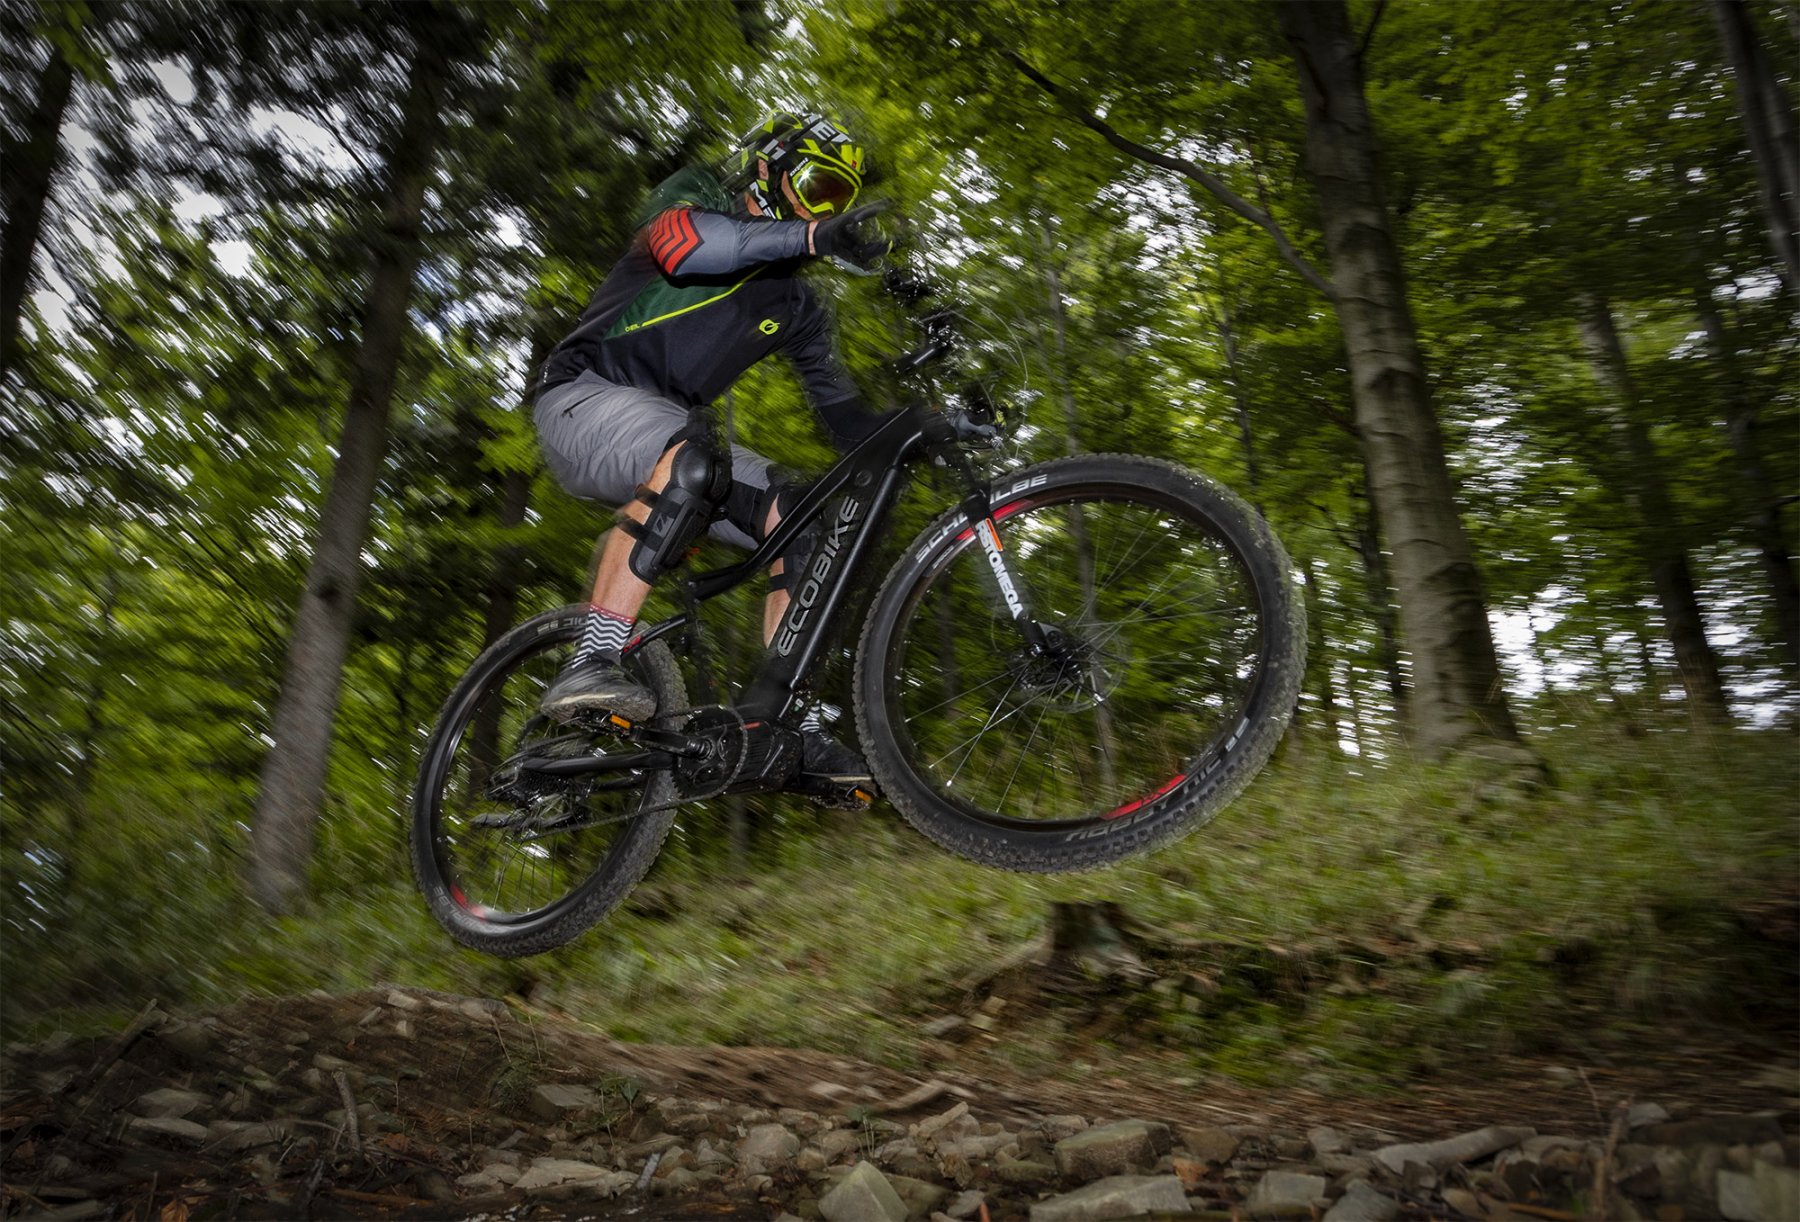 [pl] <span>Ecobike MTB</span><br /><span>Górskie rowery elektryczne</span>